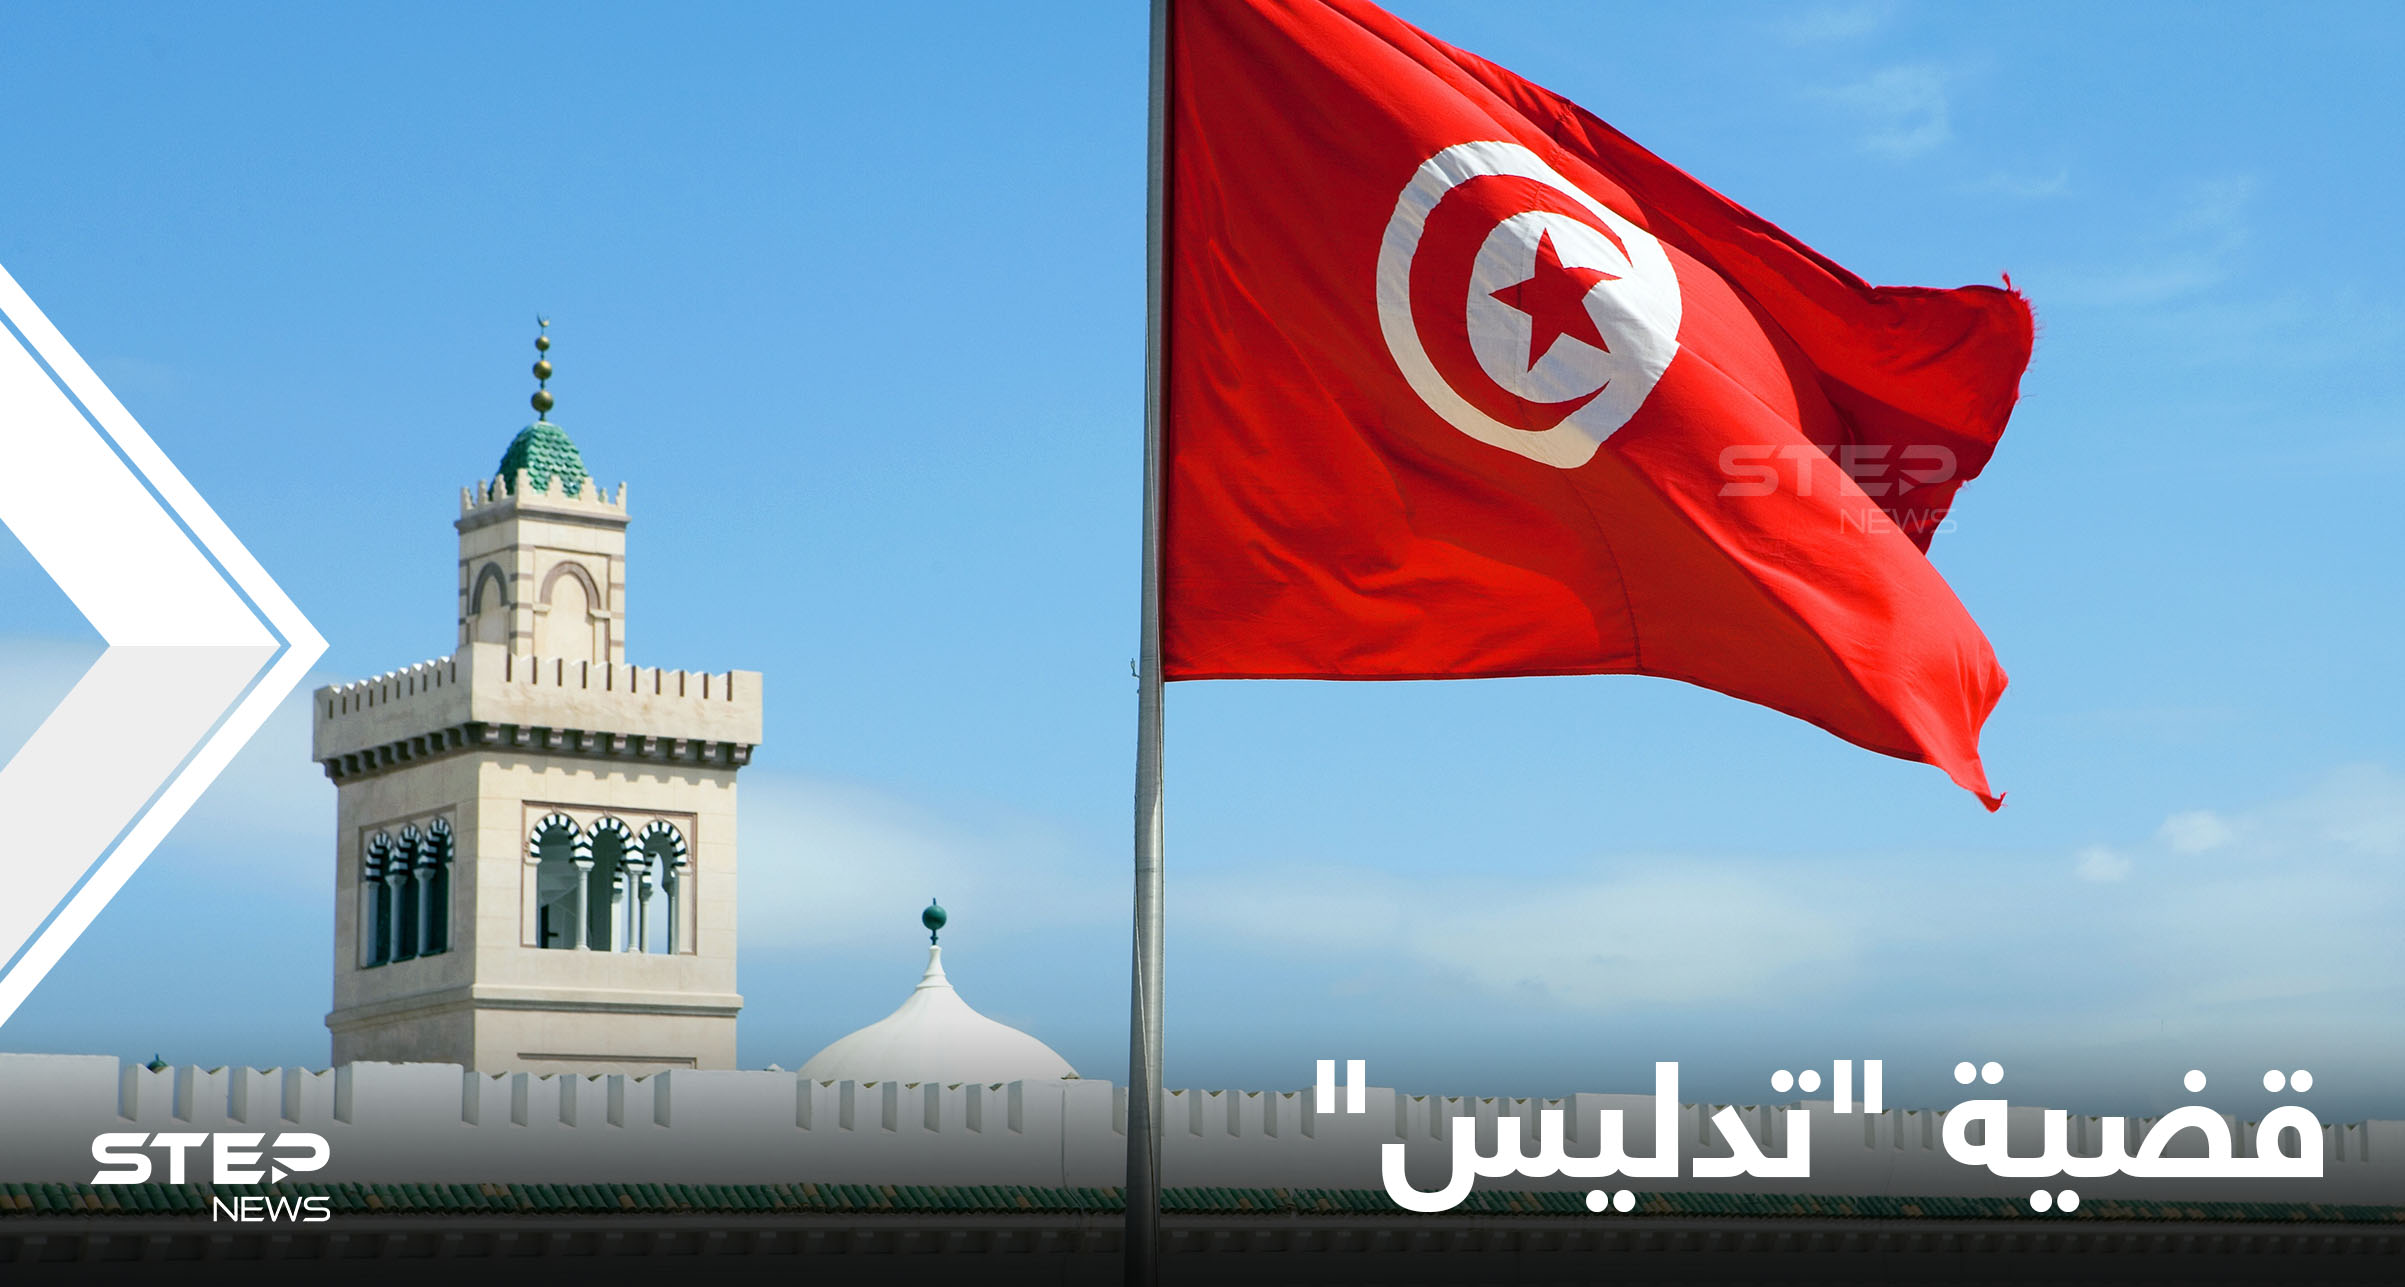 القضاء التونسي يُوقف مسؤولين كبار بجرائم "تدليس وثائق" في بعثتي دمشق وبيروت